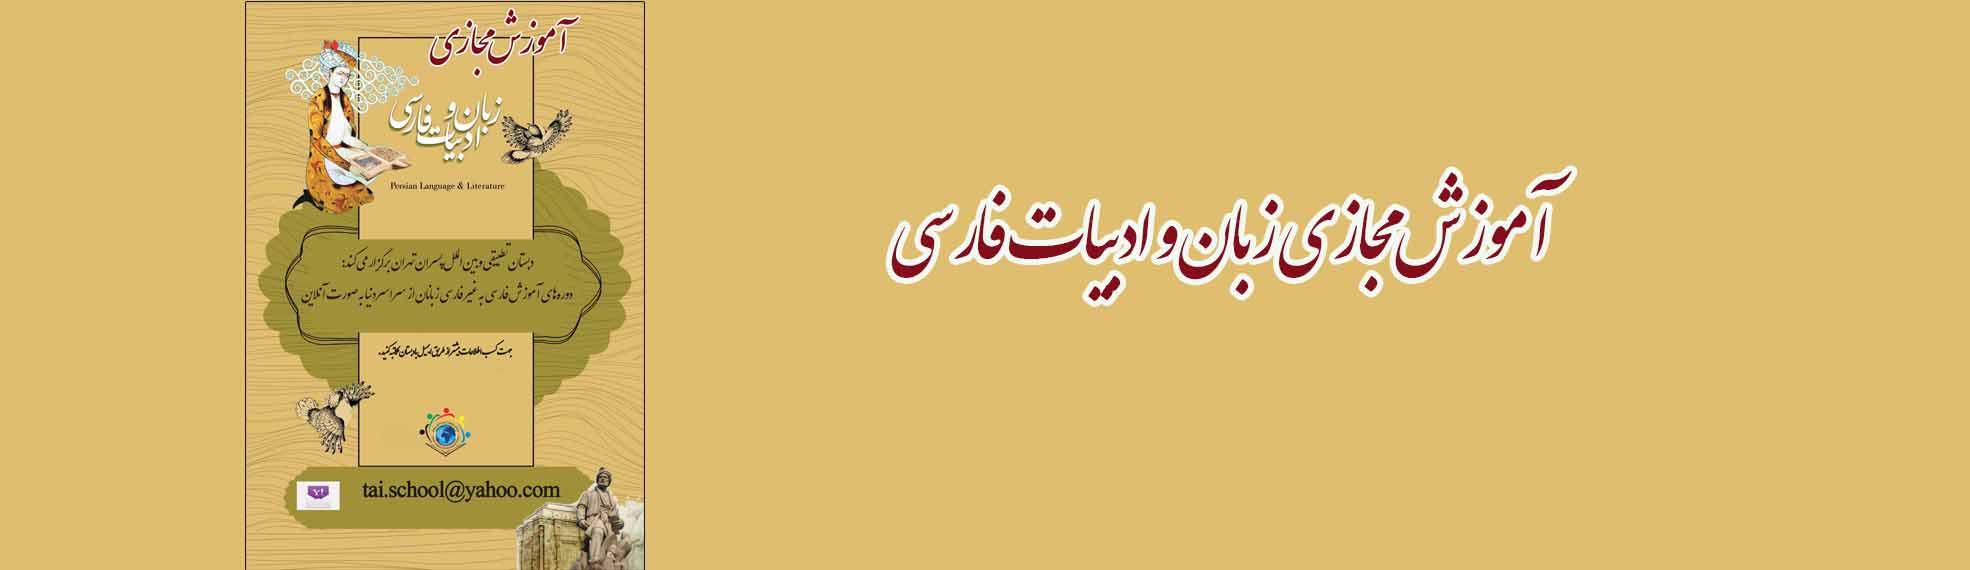 آموزش فارسی